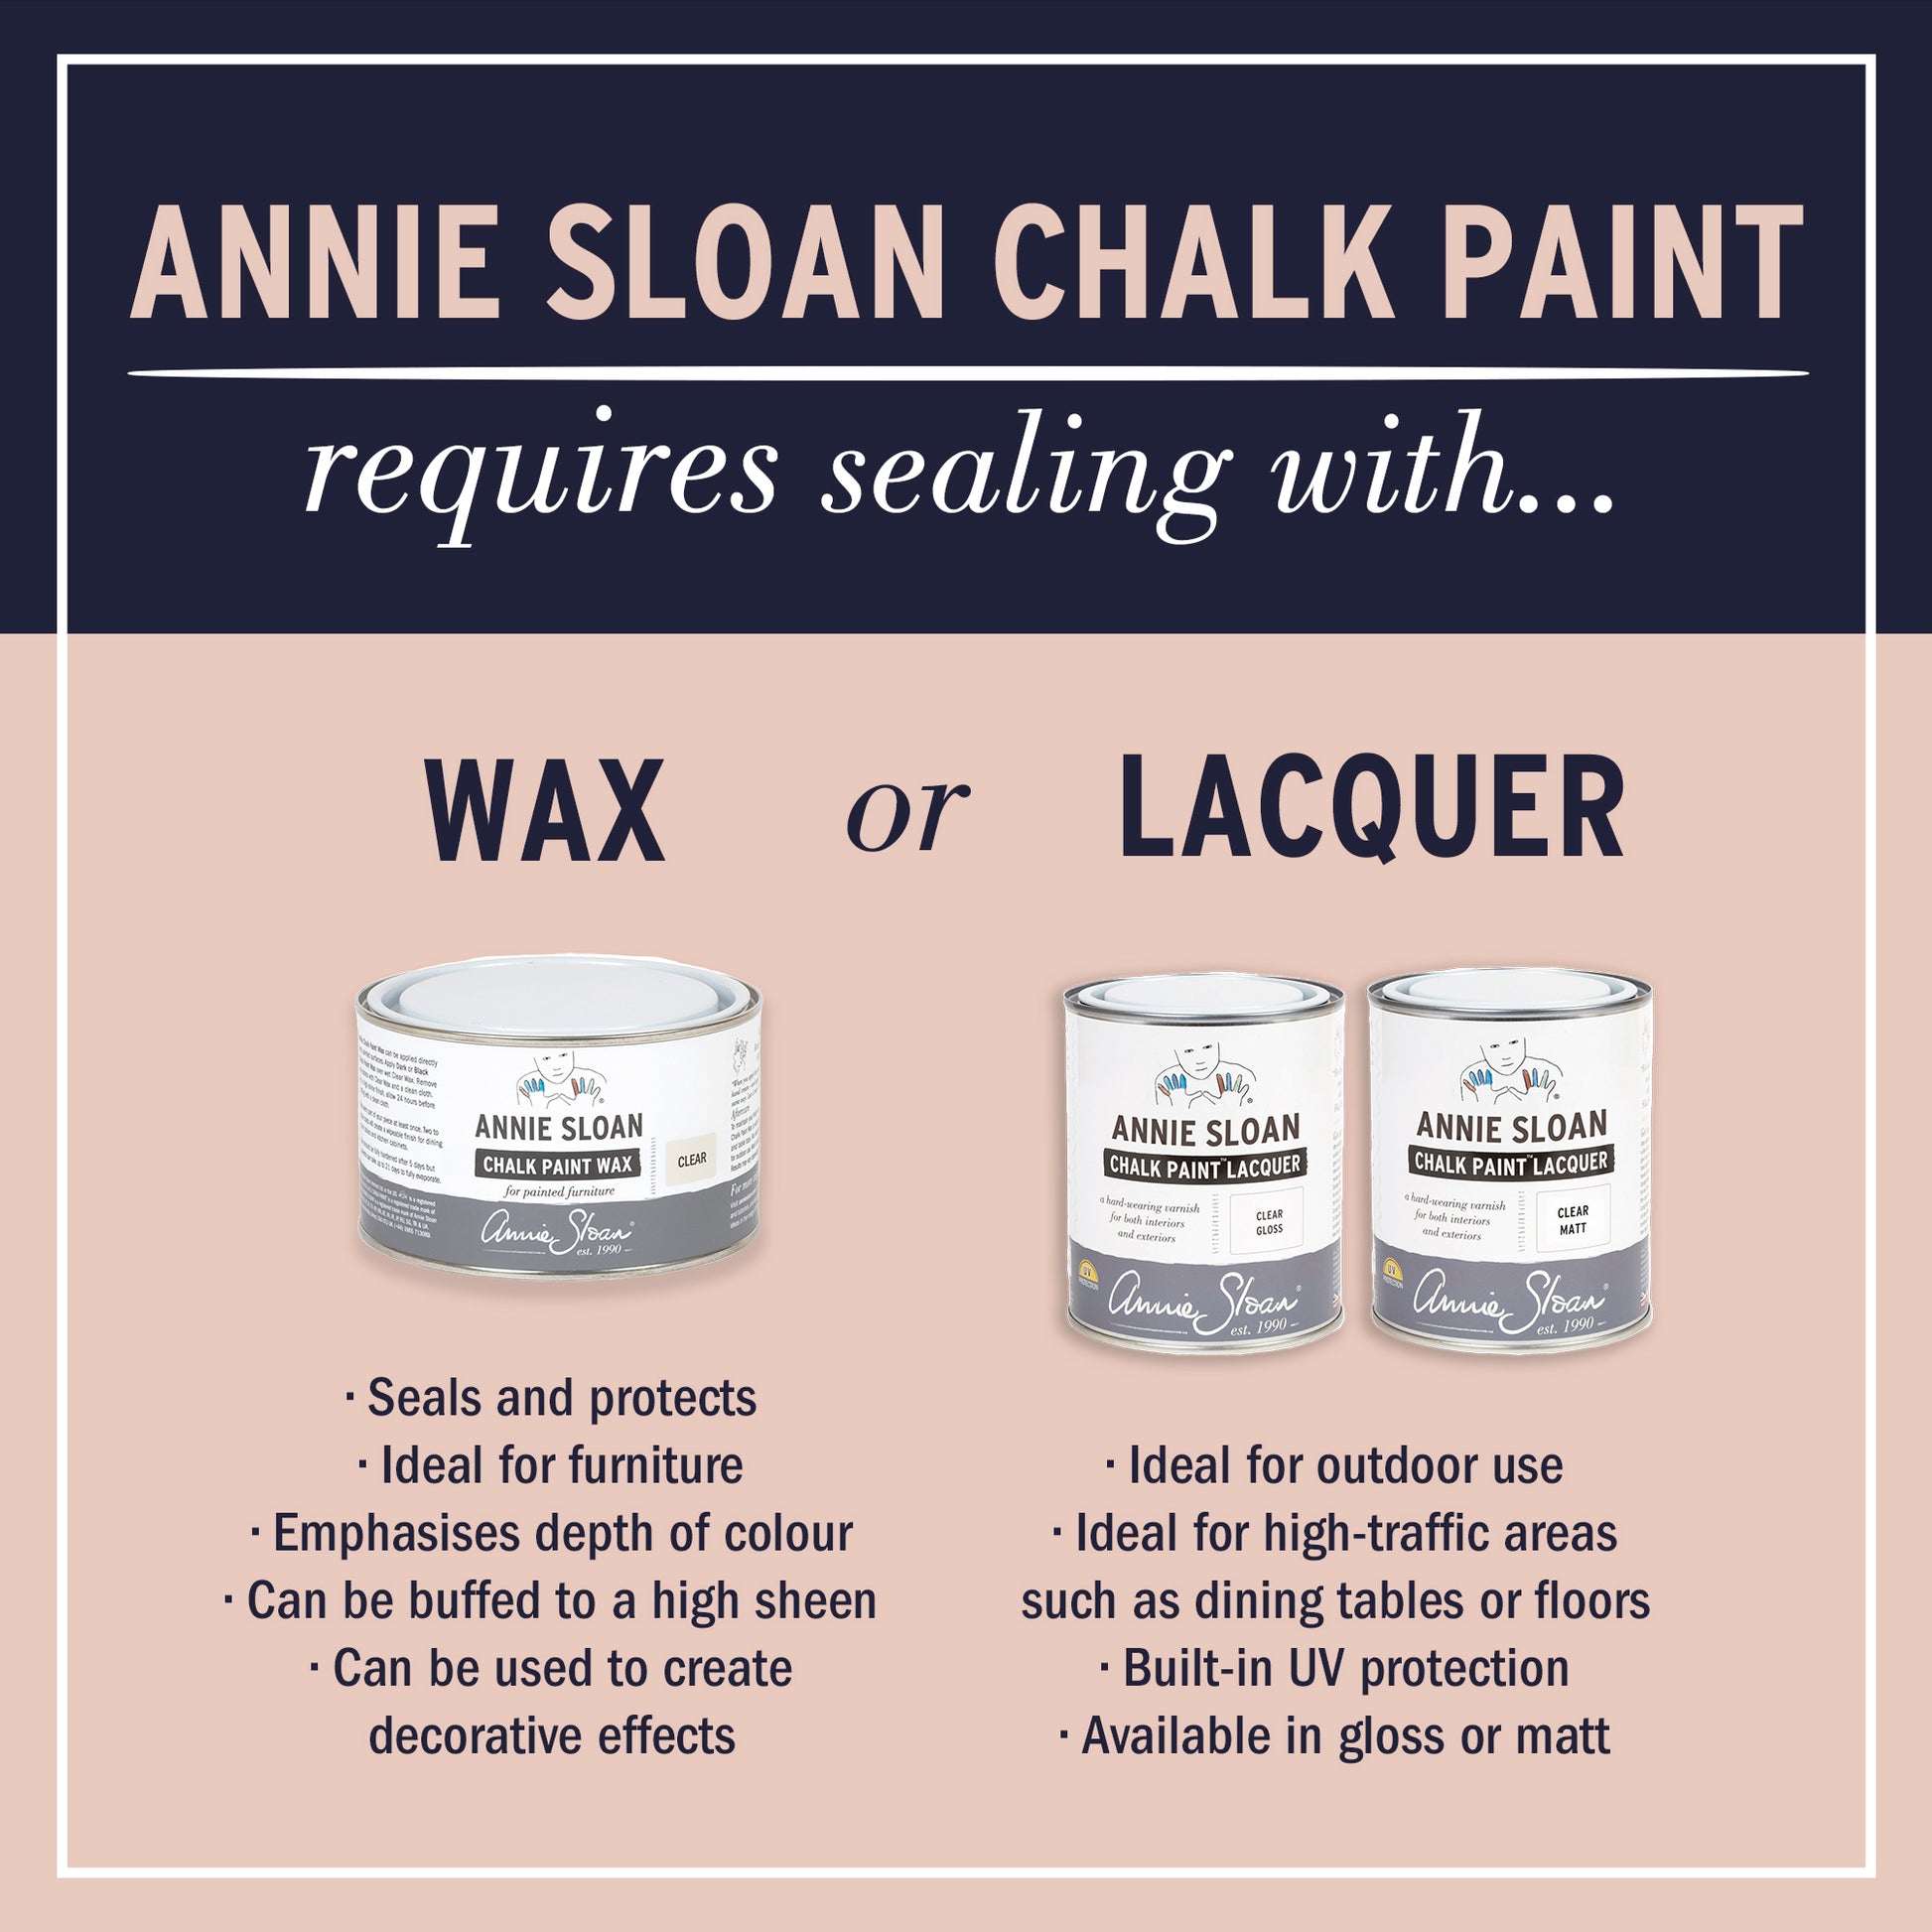 Annie Sloan Chalk Paint® - Athenian Black - The 3 Painted Pugs